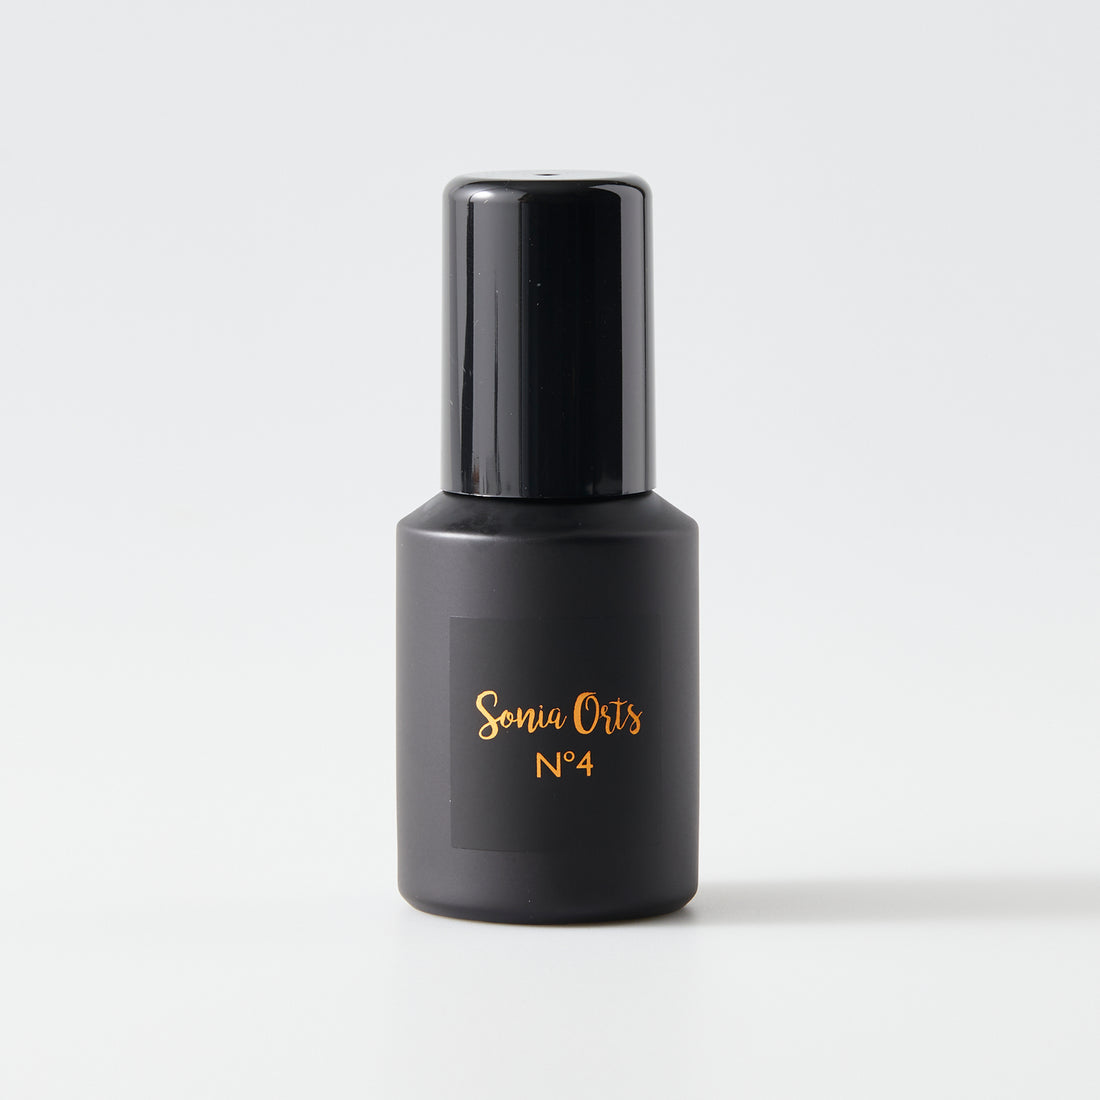 Sonia Orts No 4 natural perfume